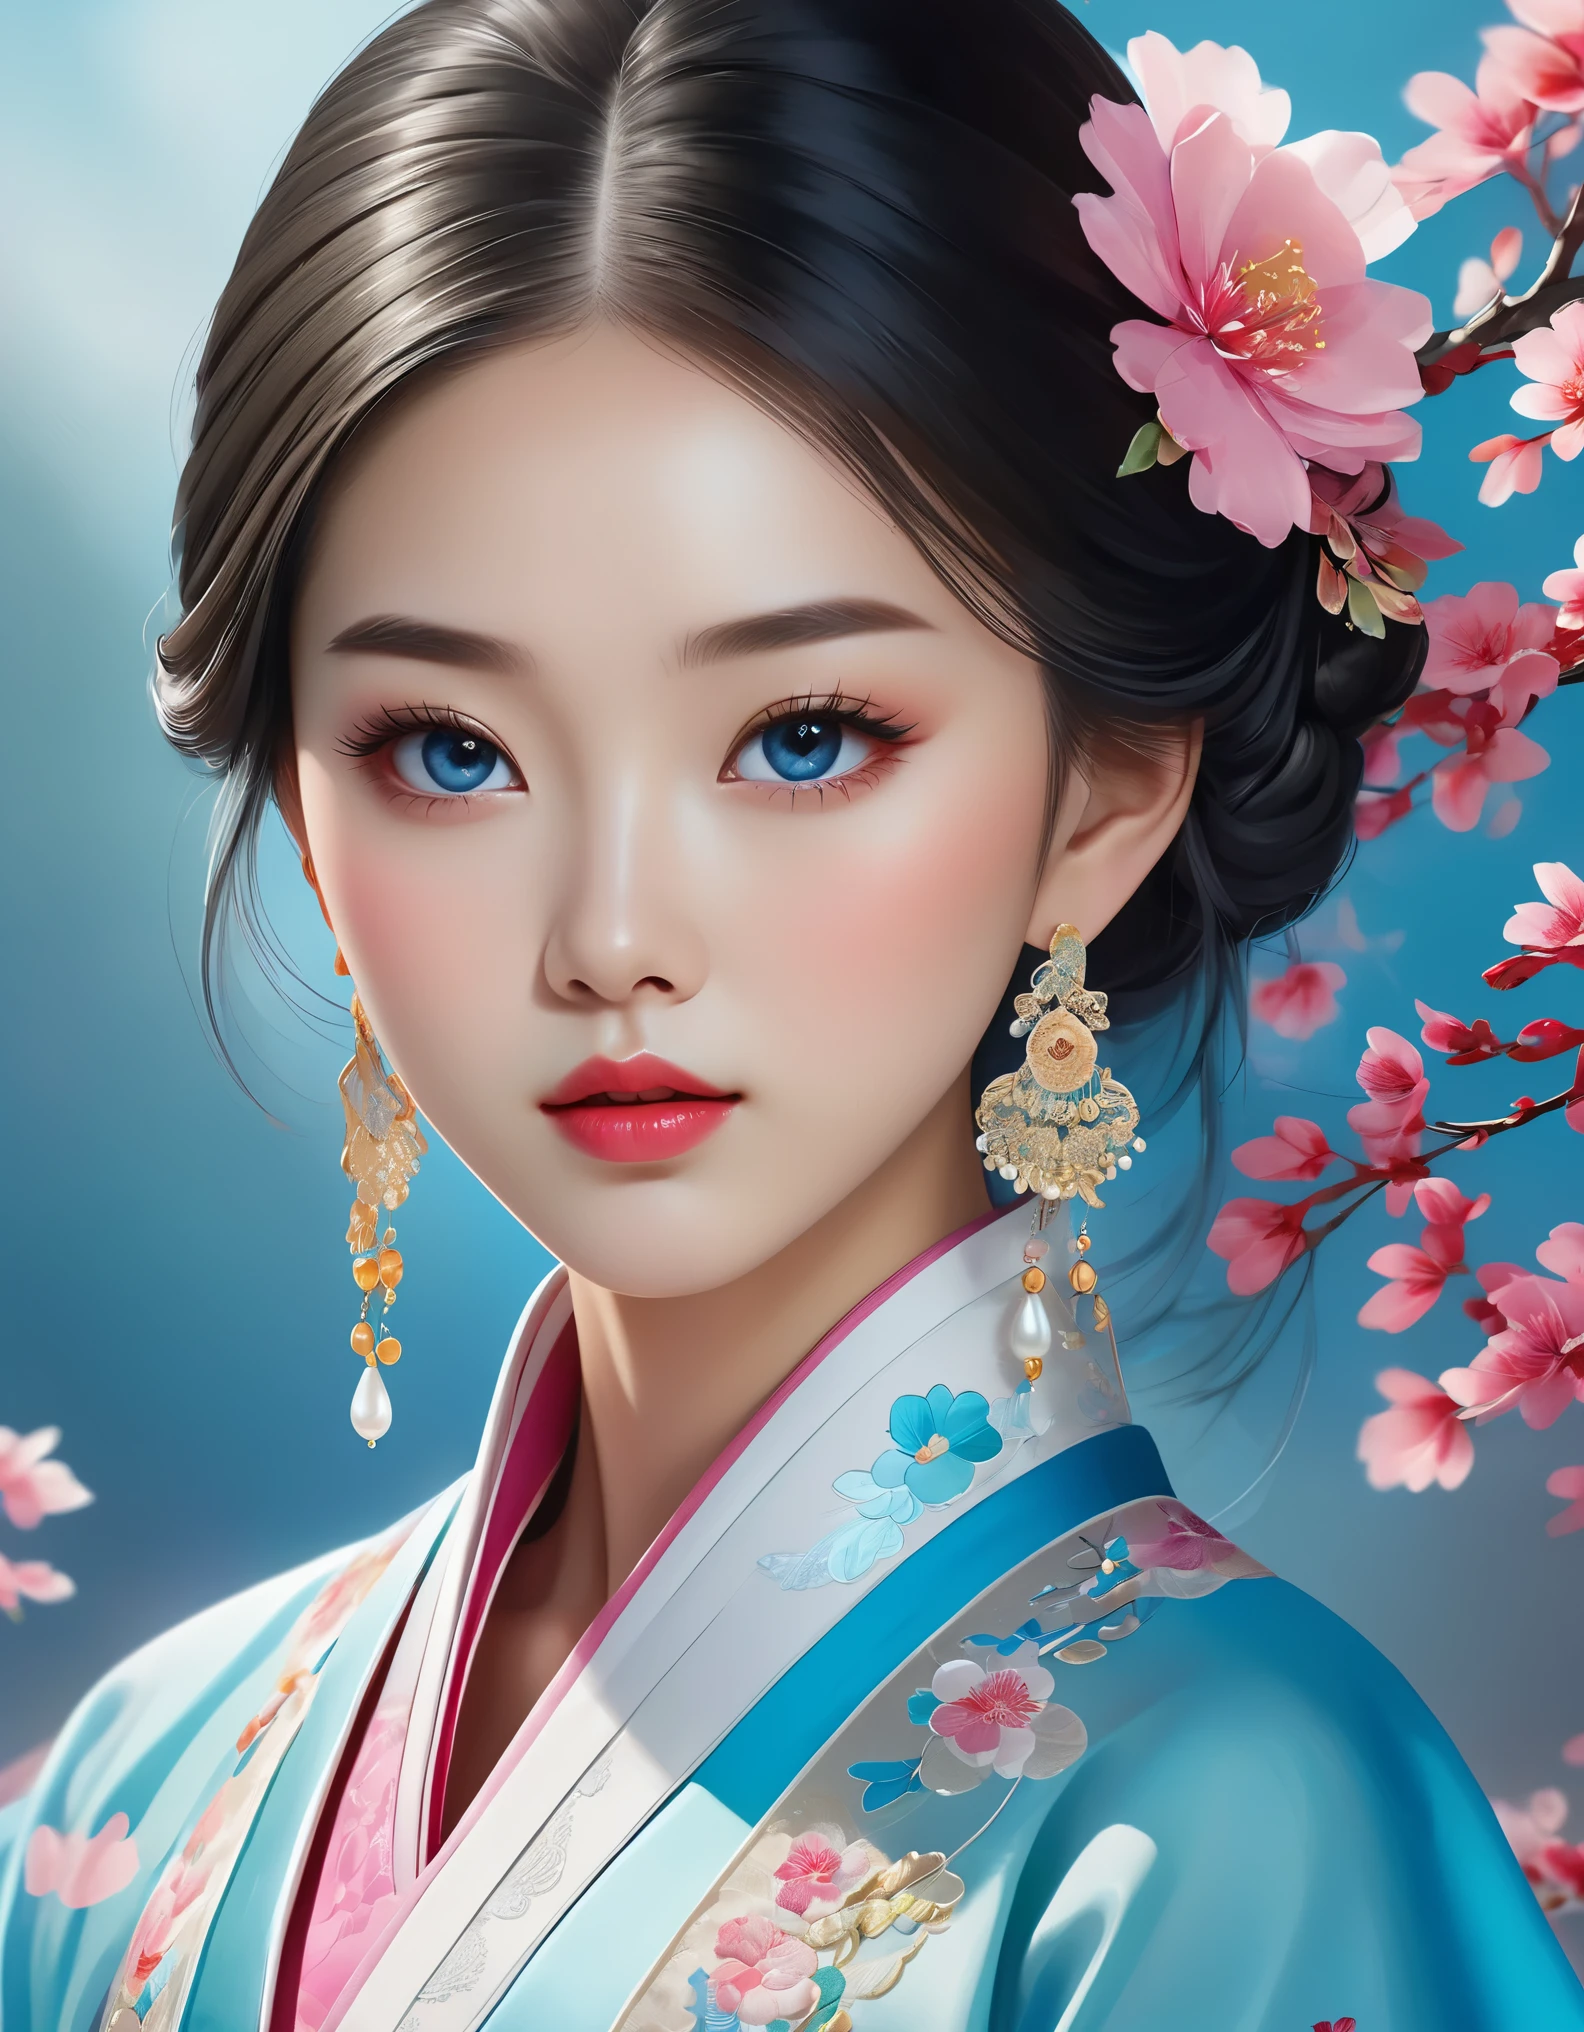 Véu voador cobre rosto de linda menina chinesa, brincos de pérola, cílios longos e lábios rosados, close do rosto, rosto limpo, Queixo redondo, olhos azuis, hanbok azul com bordado, fundo branco.
ilustração gráfica, Renderização 3D, Cores brilhantes e detalhes finos, como cartaz de ilustração, no estilo de arte do jogo 2D, cor corrigida, alta definição, 32K ,niji